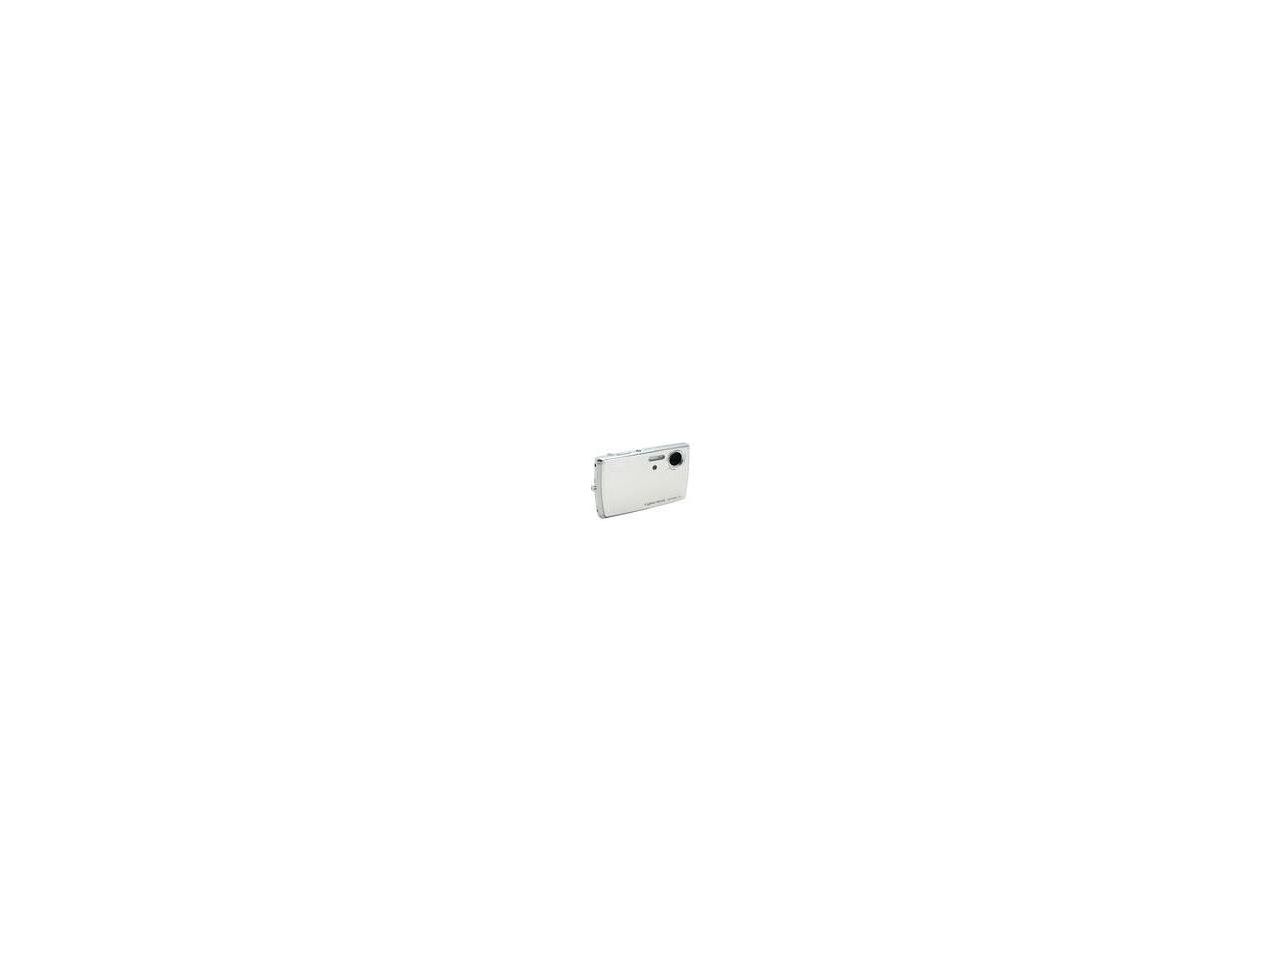 Sony DSC-T33 Silver 5.0MP / 3X Optical Zoom